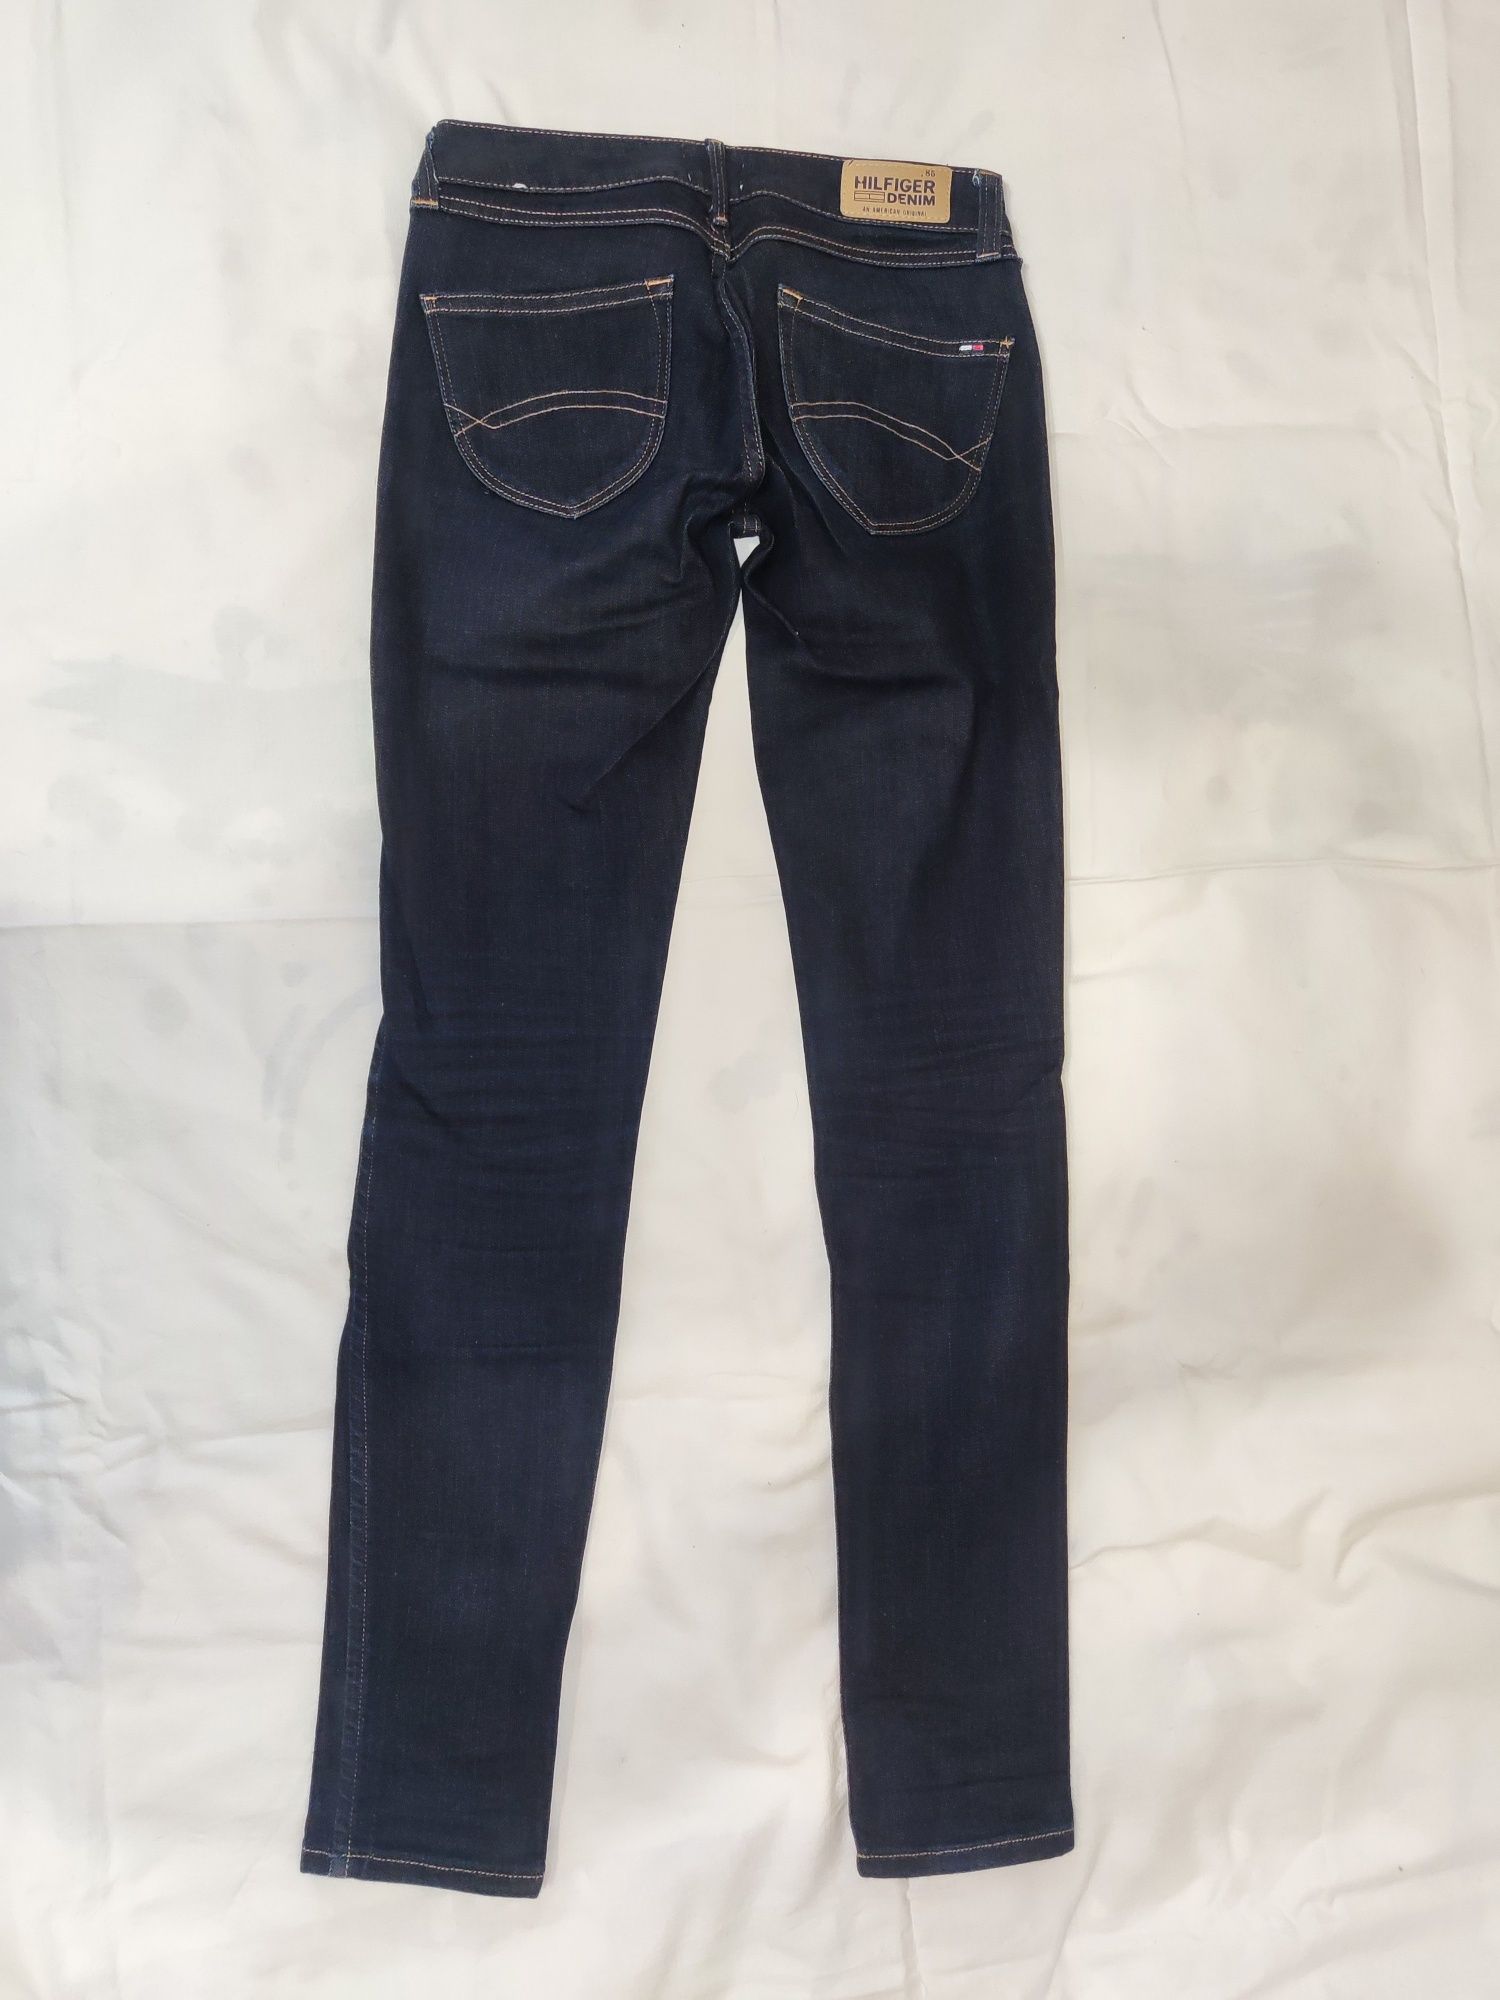 Оригинальные джинсы Tommy Hilfiger и Calvin Klein р. 25